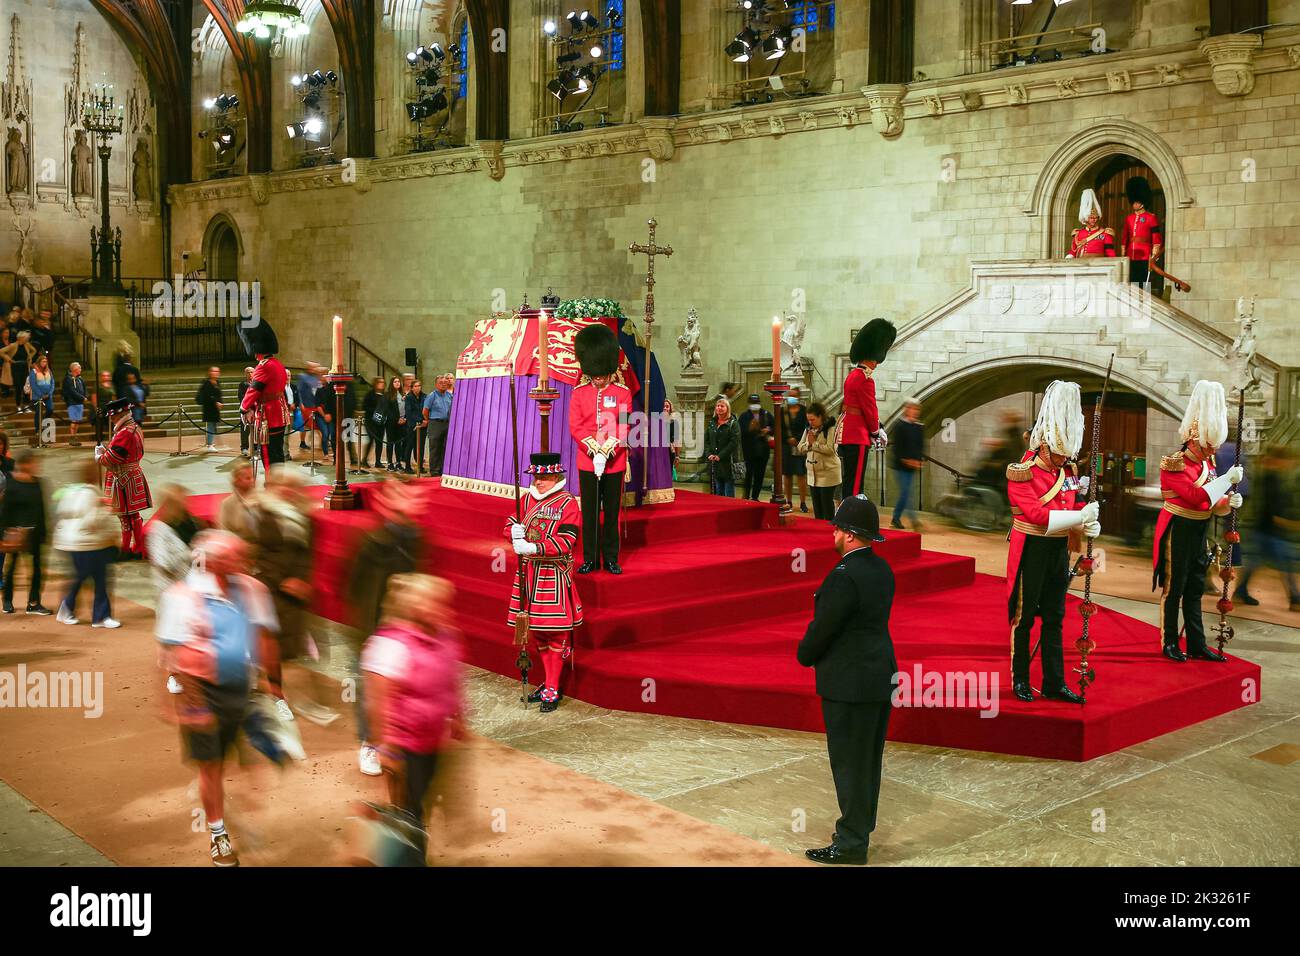 Les membres du public voient le cercueil de la reine Elizabeth II pendant la période d'état à Westminster Hall, Londres, Angleterre, Royaume-Uni Banque D'Images